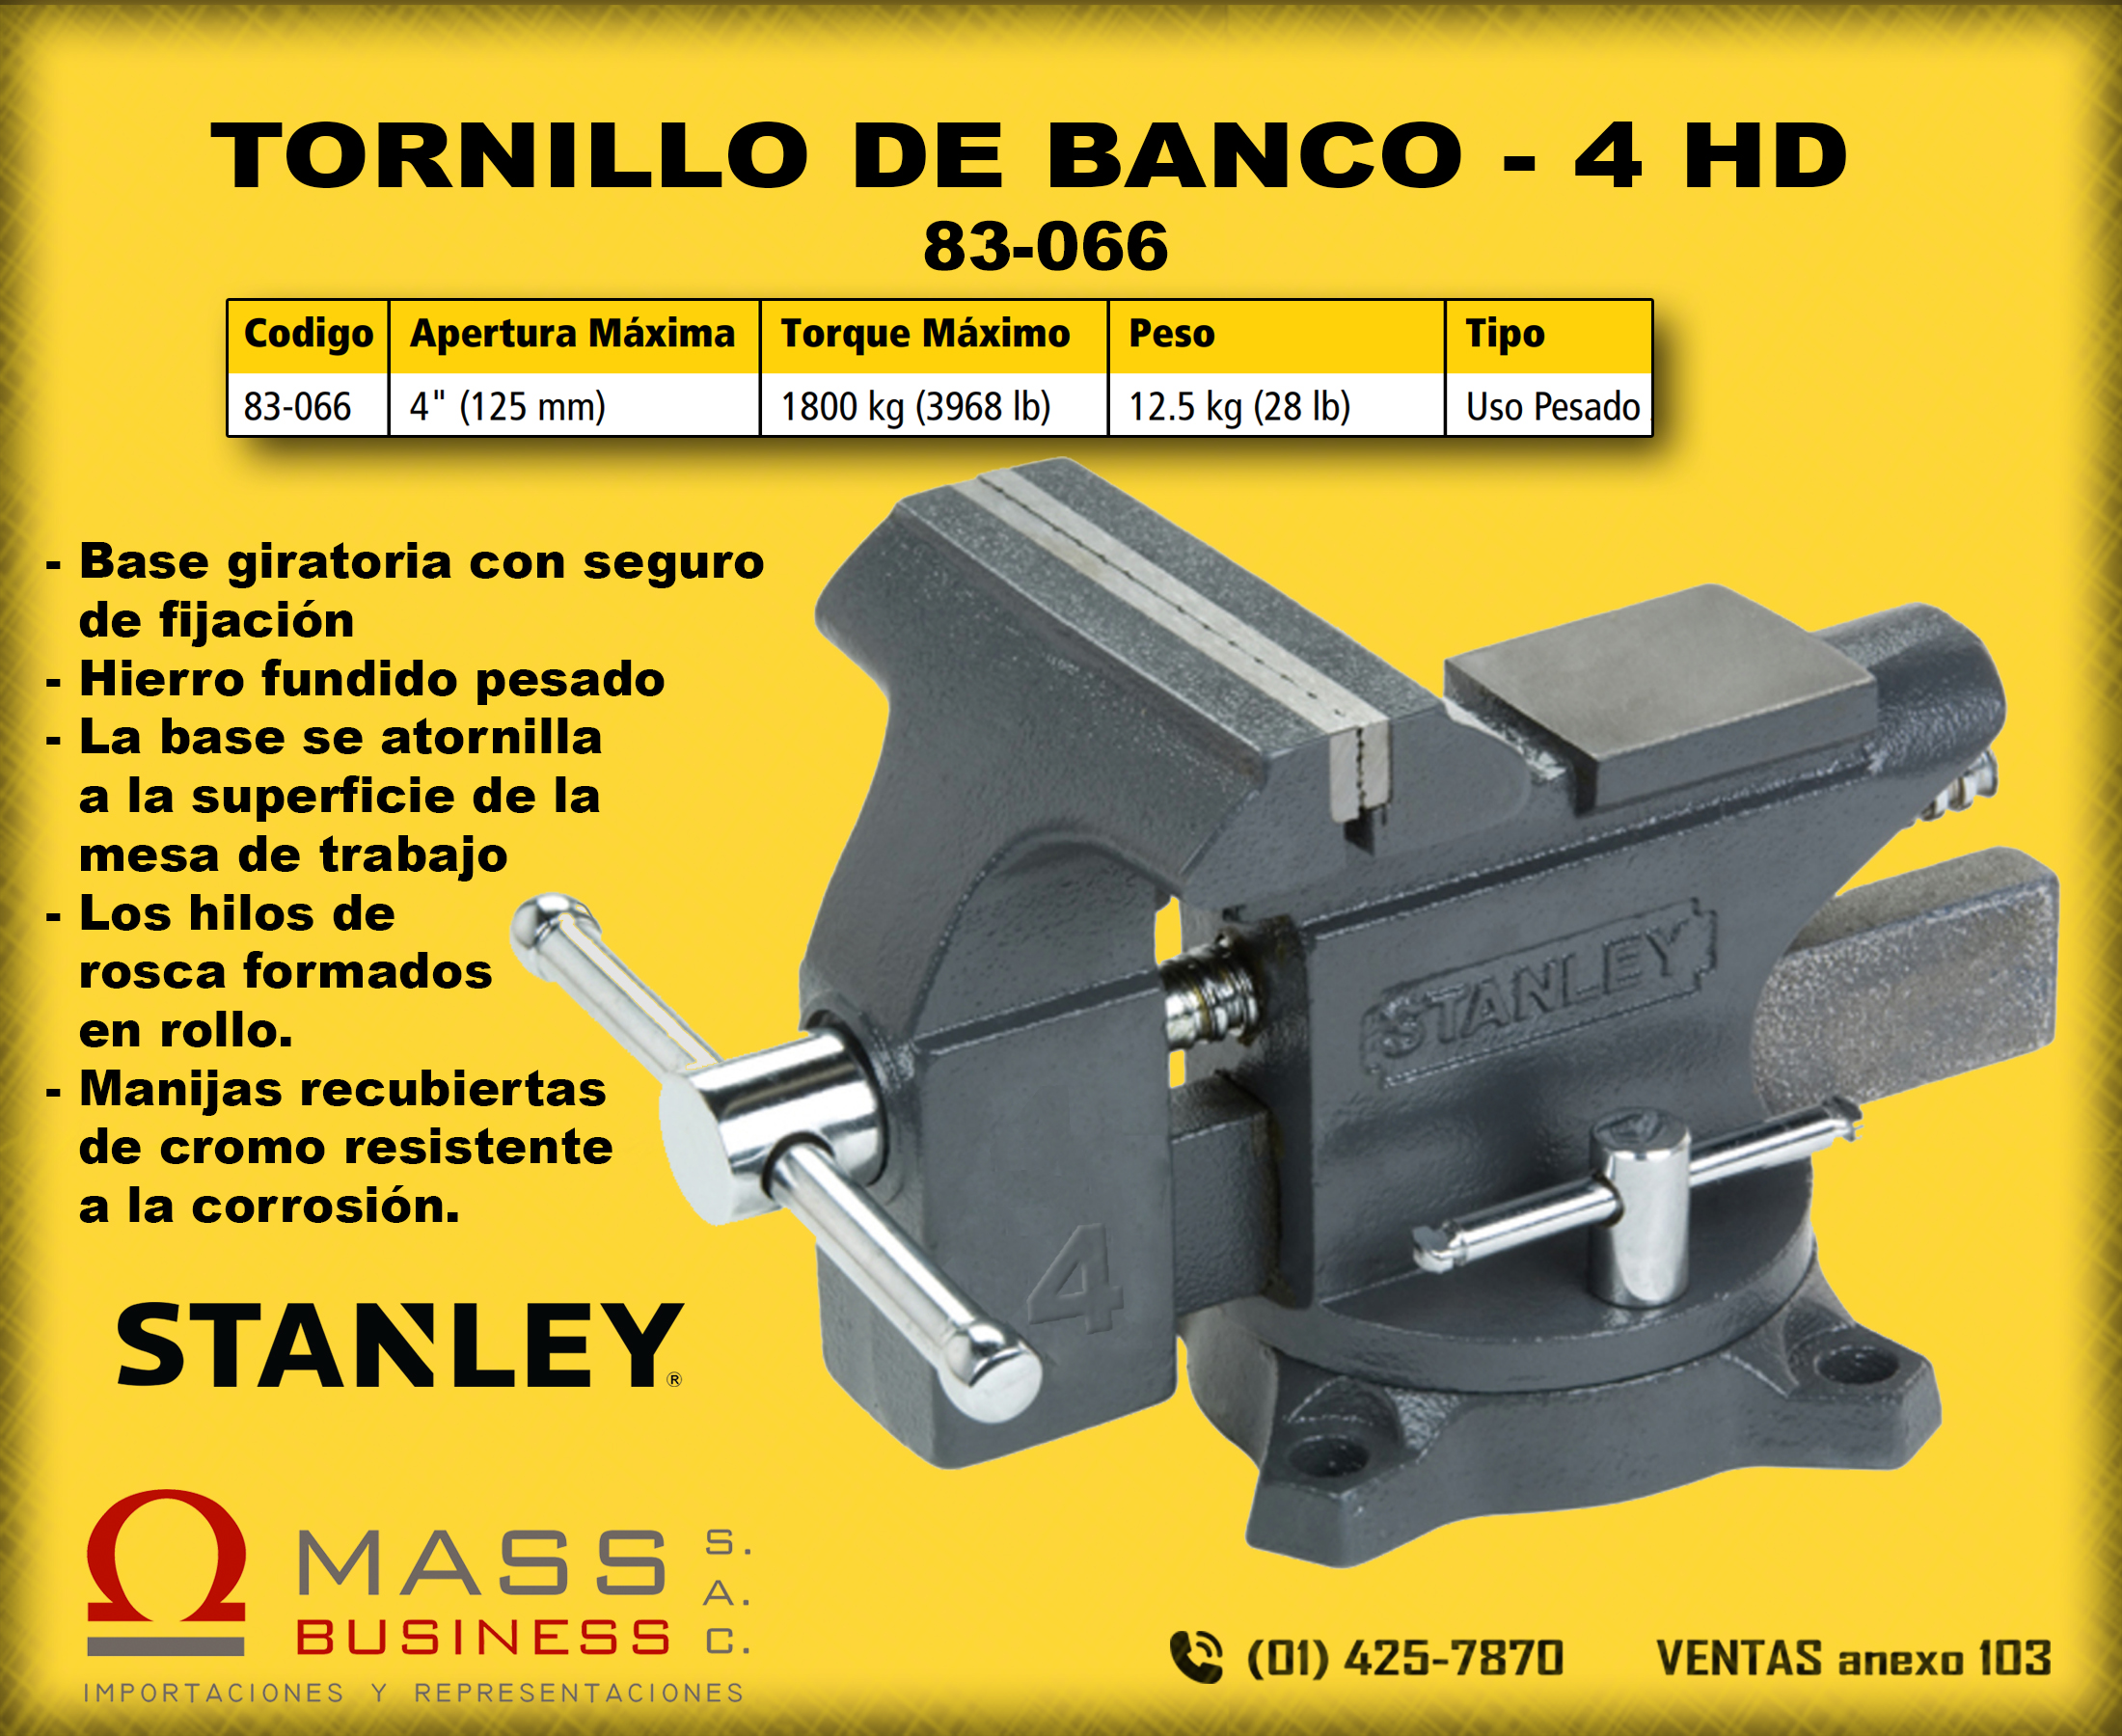 TORNILLO DE BANCO - 4 HD